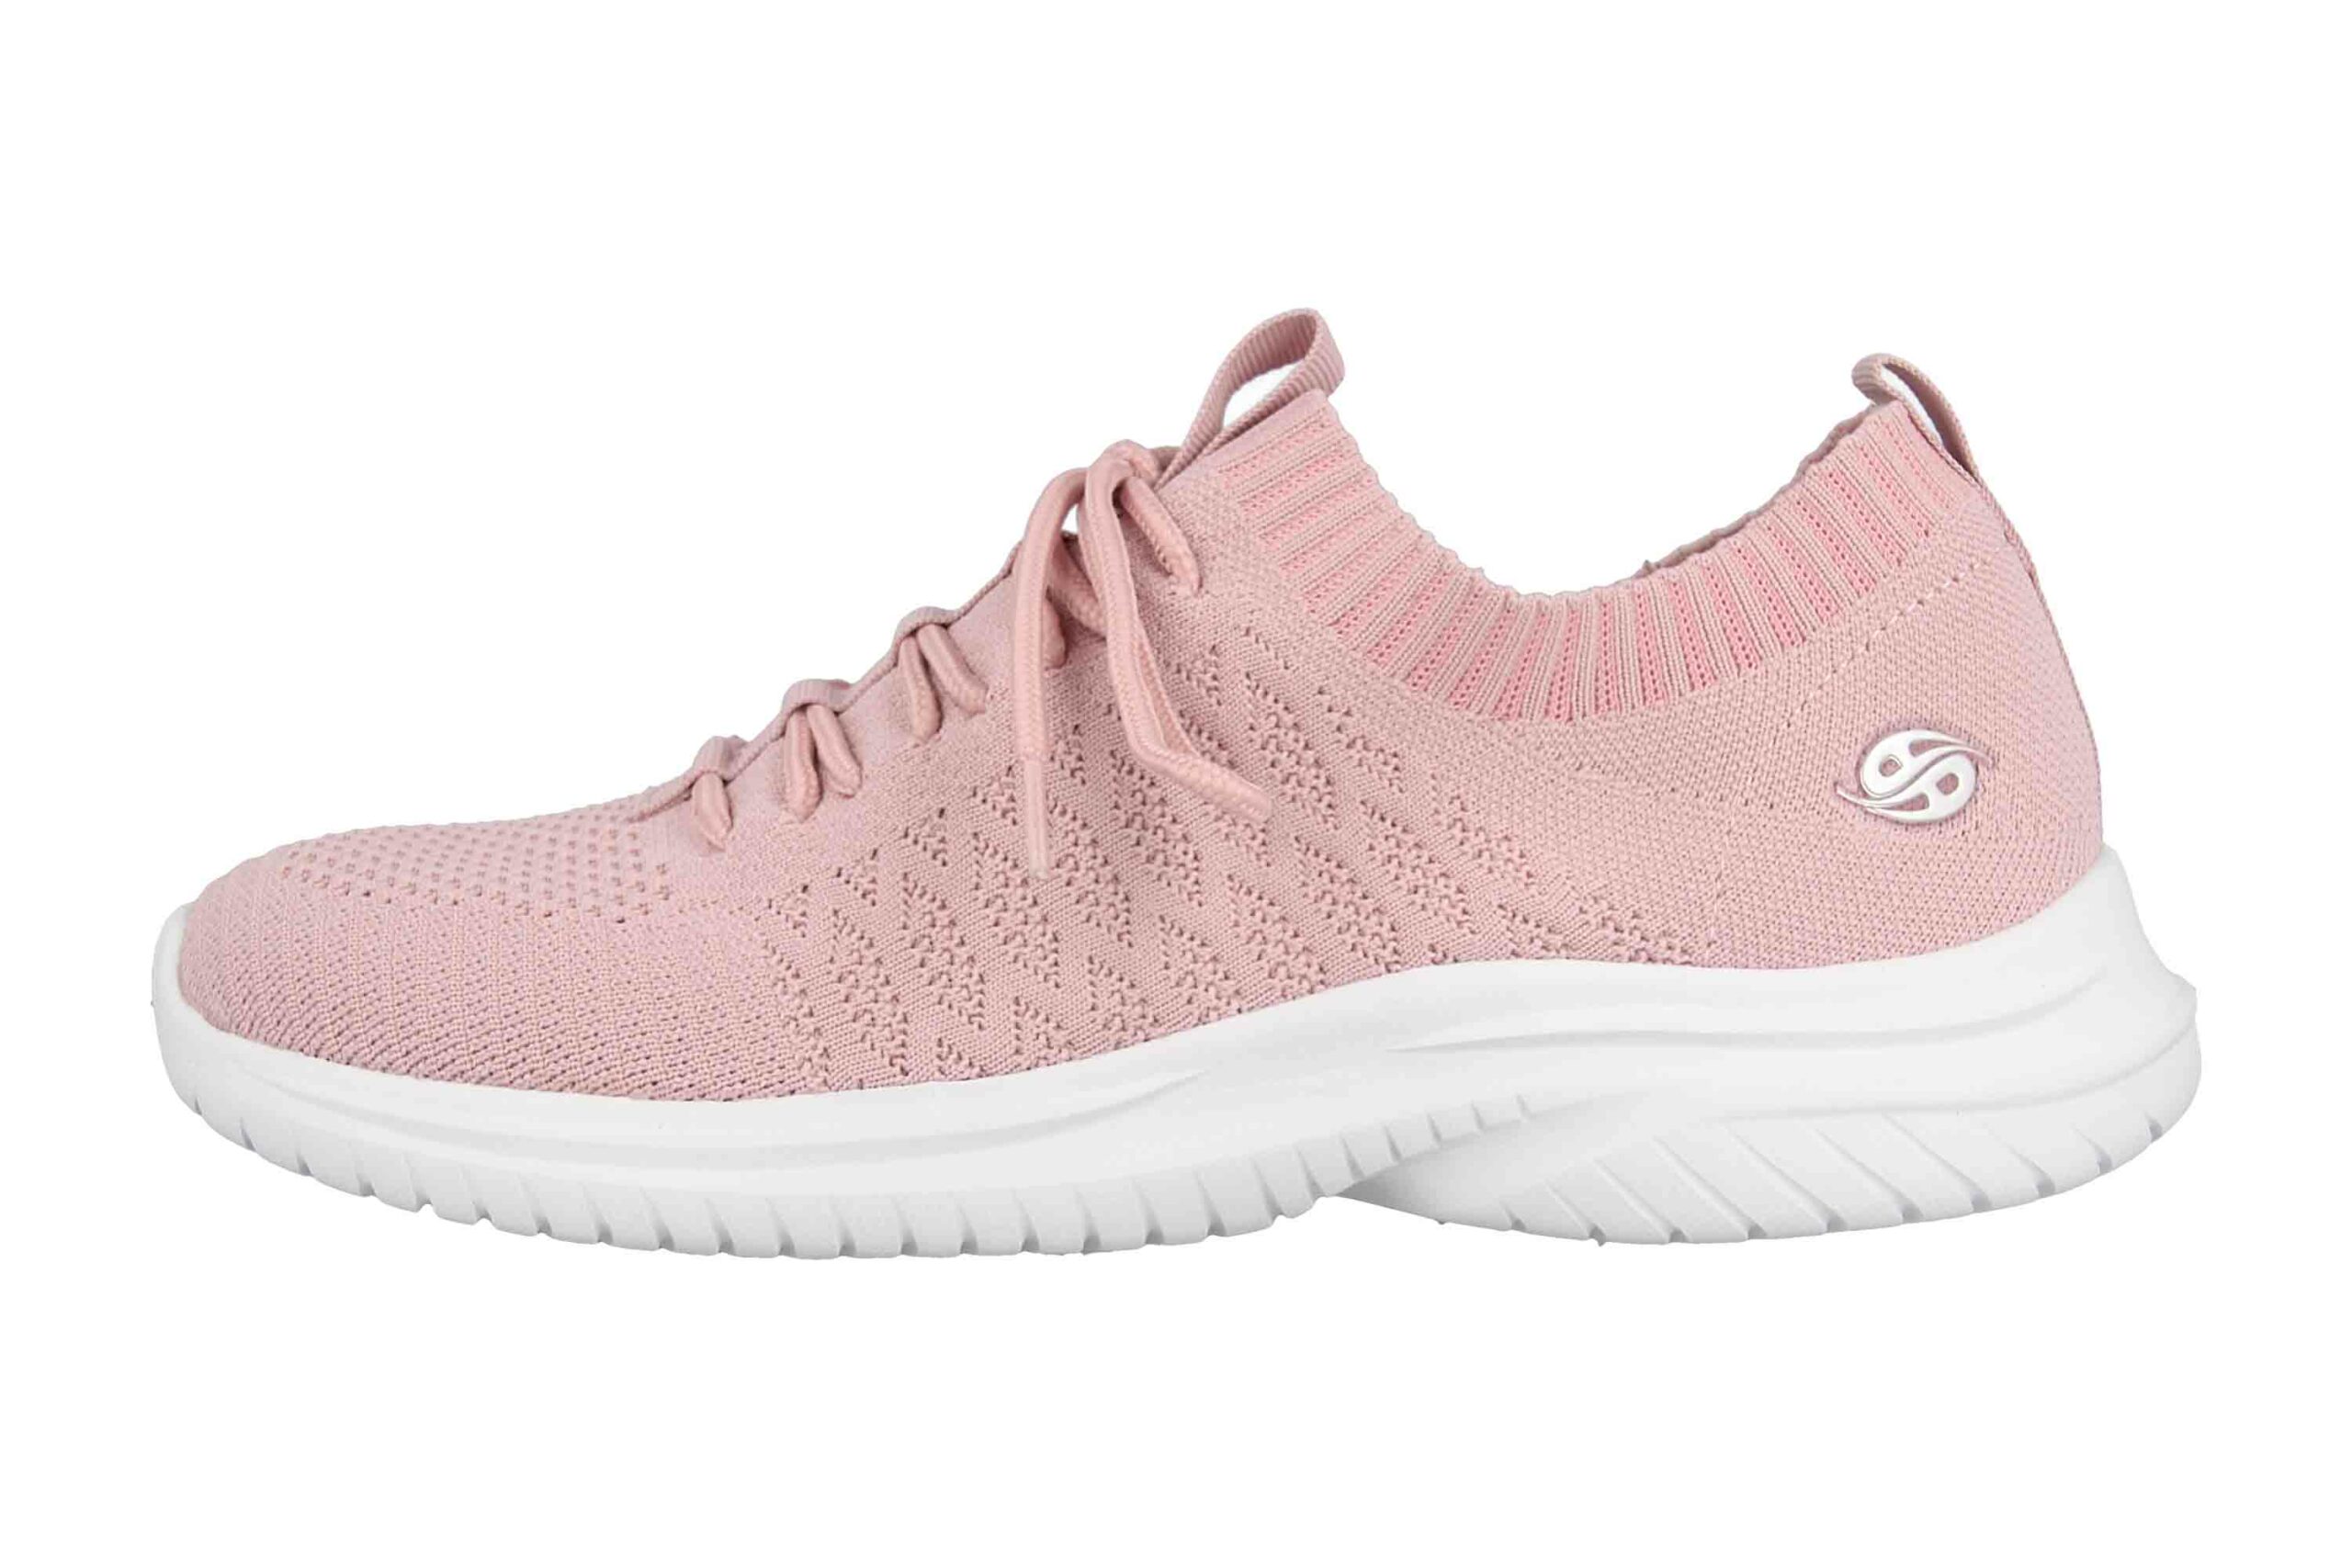 Dockers Sneaker in Übergrößen Pink 48HP208-700770 große Damenschuhe